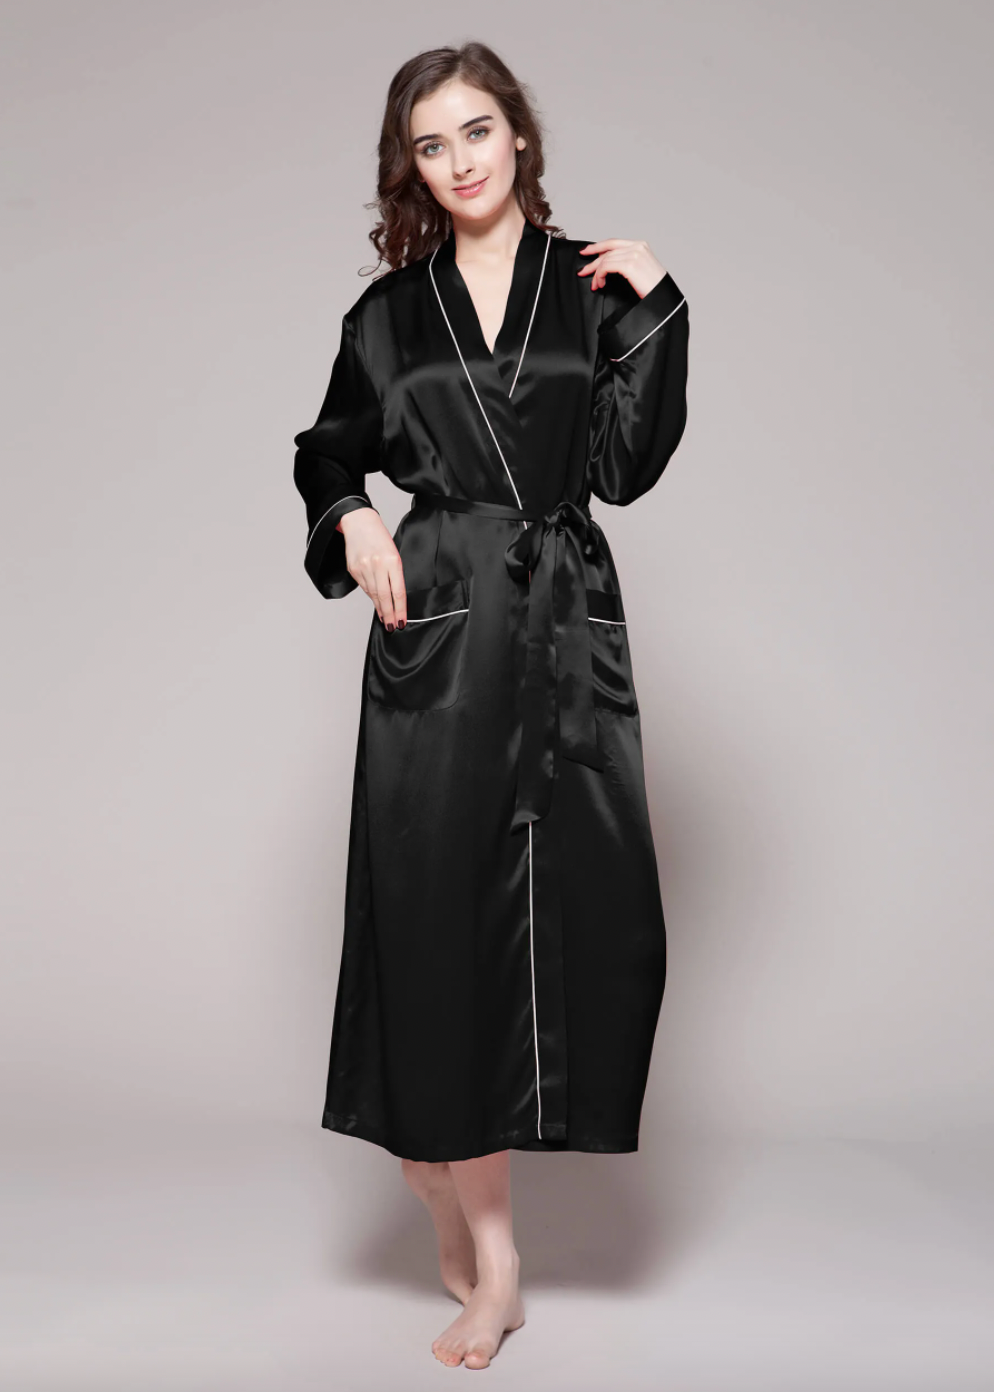 PRODESIGN Satin Kimono Robe with no Lace (Black) : Amazon.in: Home & Kitchen